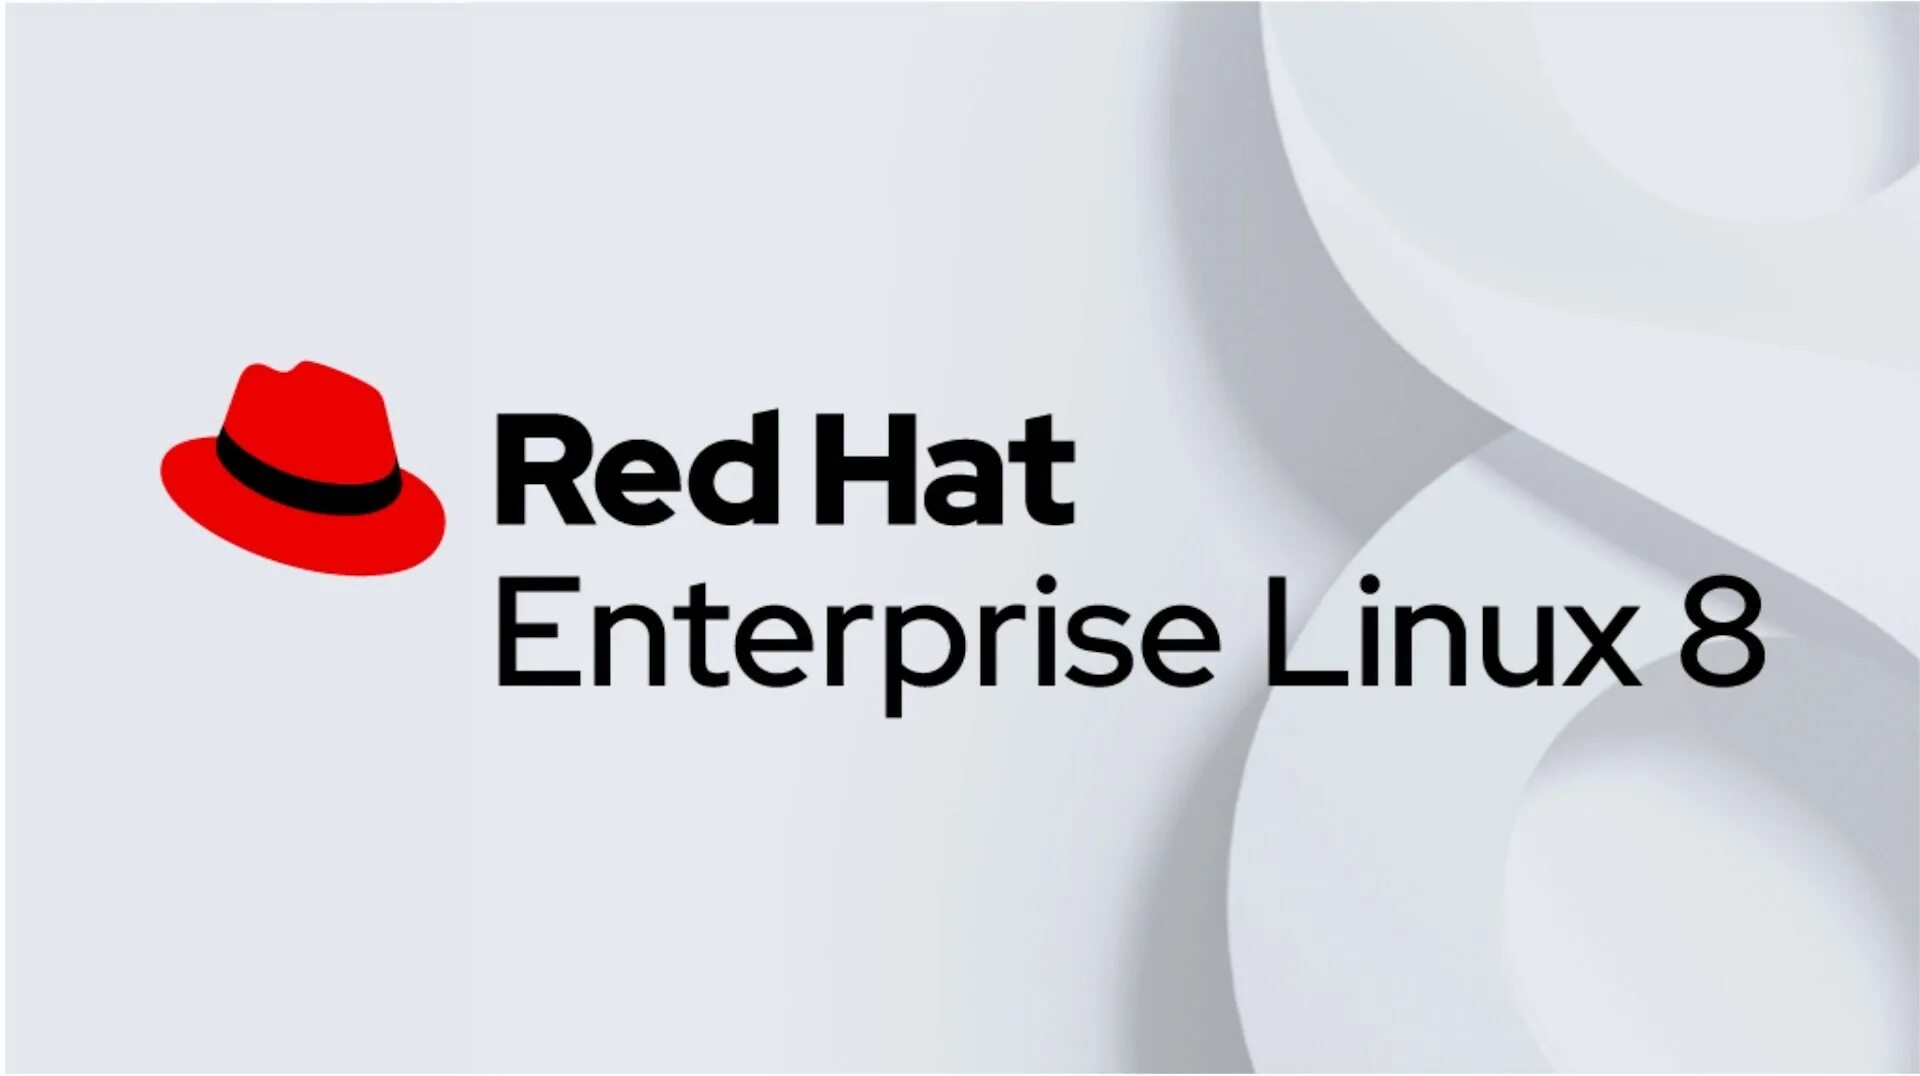 Red hat Enterprise Linux. Red hat Enterprise Linux (RHEL). RHEL 8. Red hat Enterprise Linux 8. Red hat 7